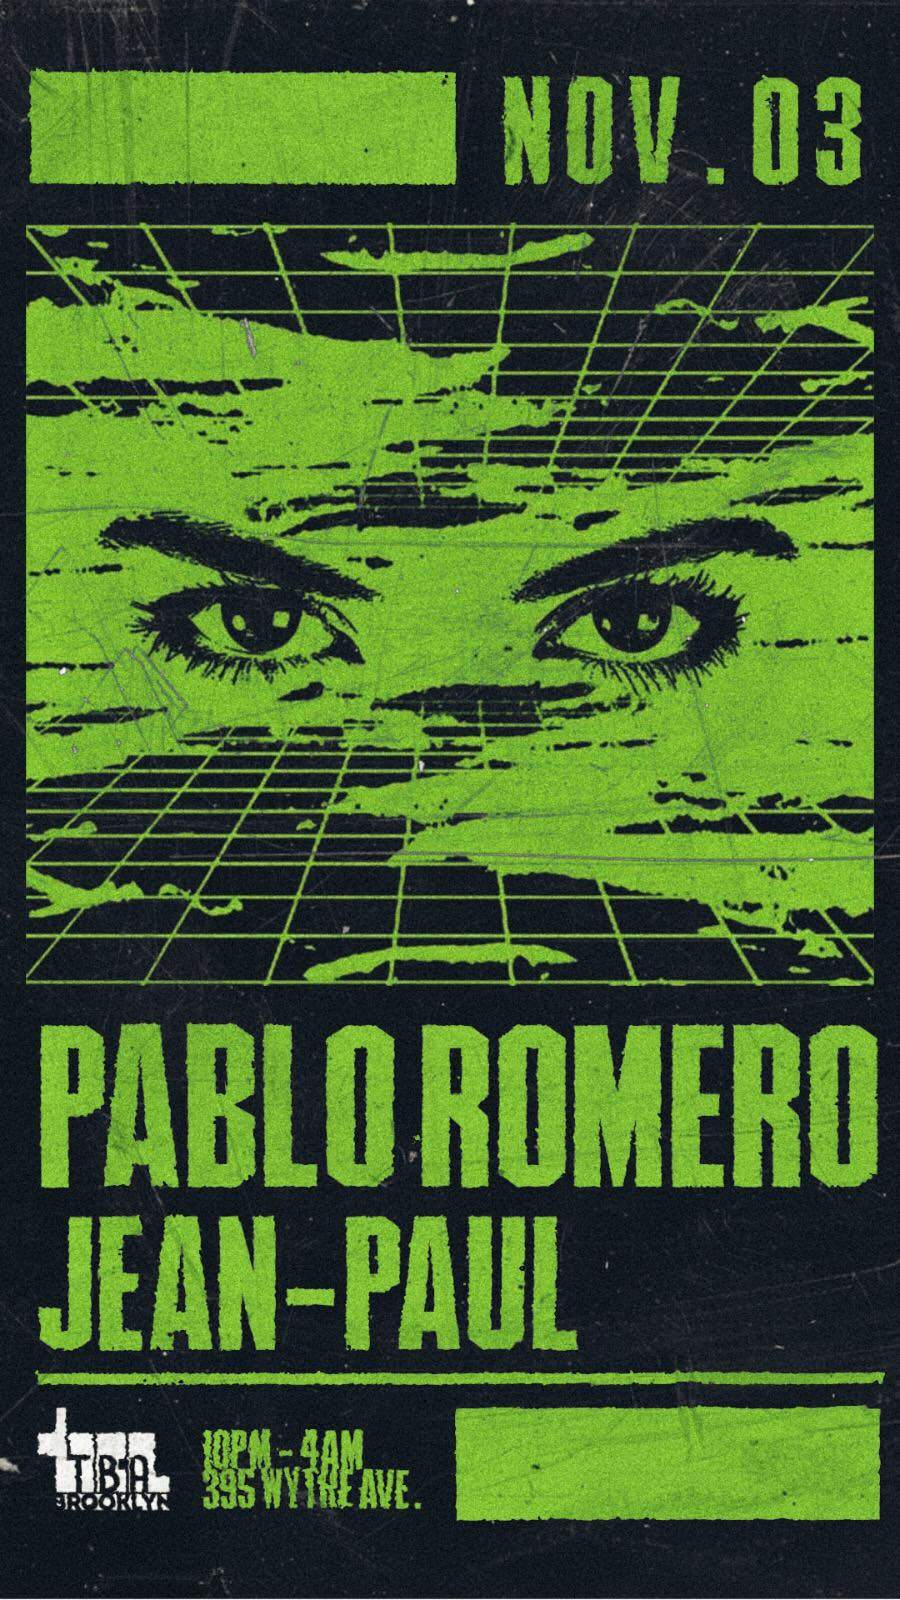 Pablo Romero + Jean-Paul - Página frontal